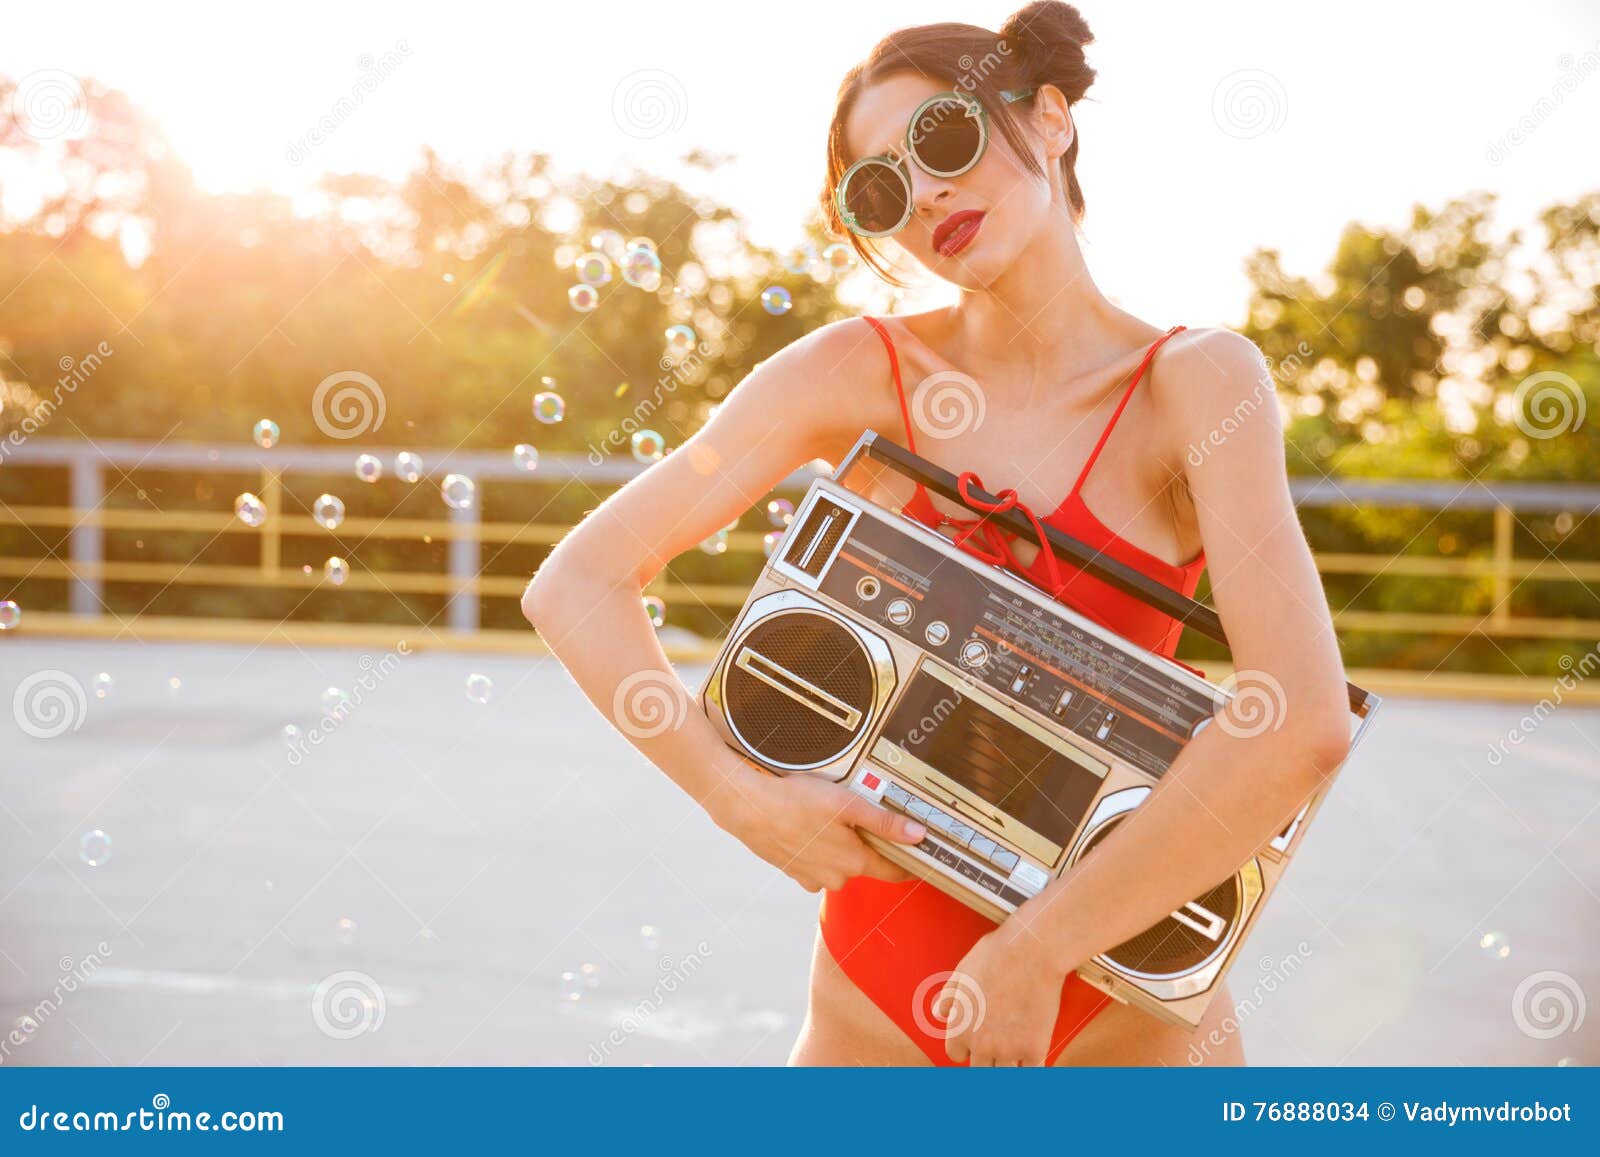 Слушать песню на лету. Фотосессия с магнитофоном. Красивая девушка с магнитофоном. Девушка с кассетным магнитофоном. Девушка с магнитофоном на плече.